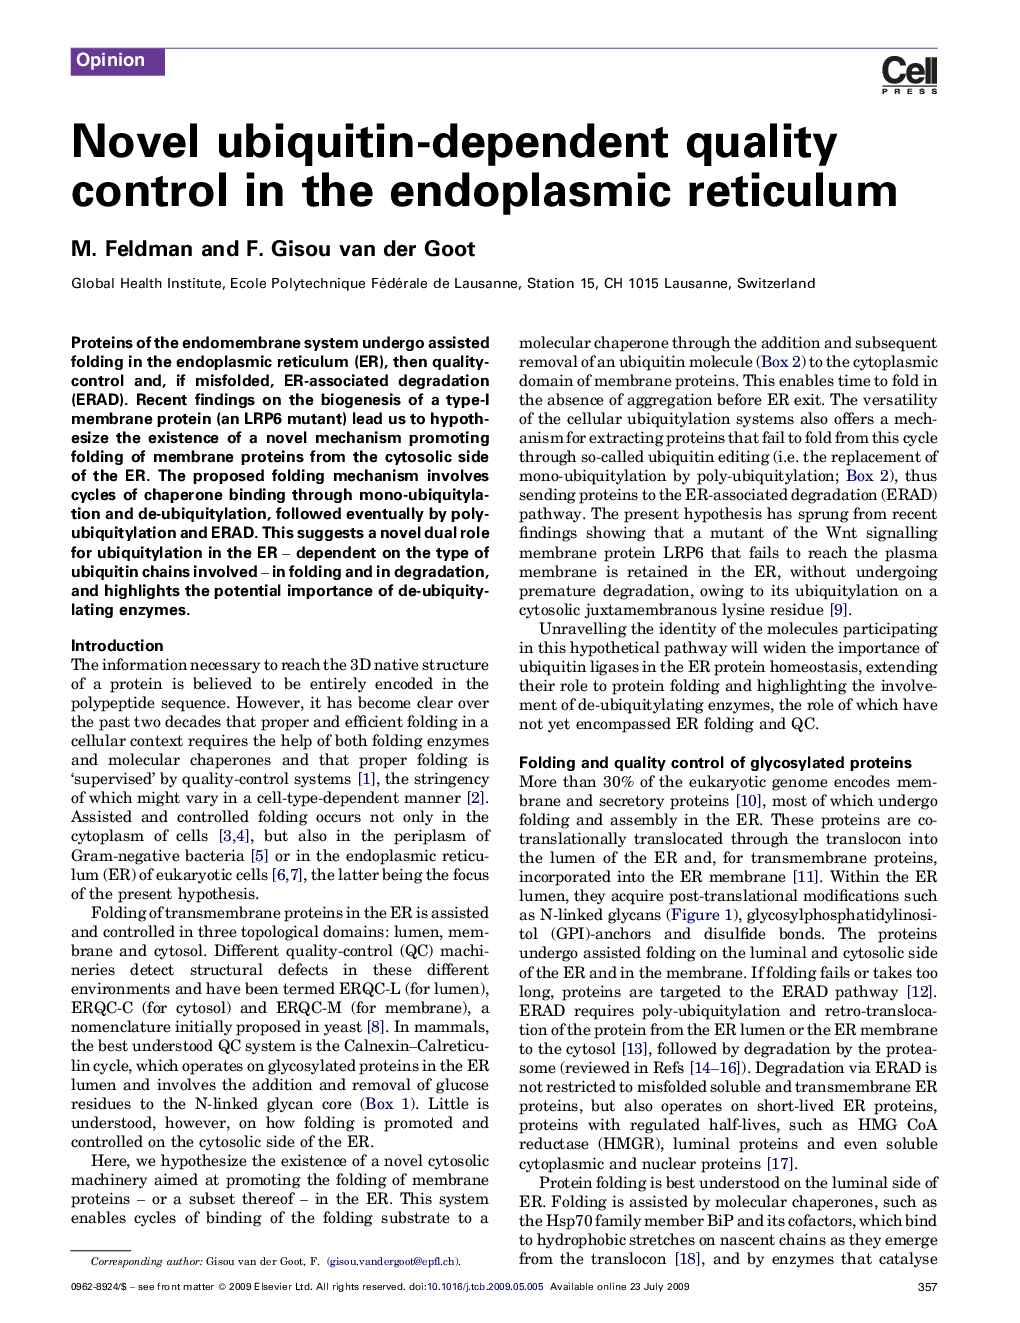 Novel ubiquitin-dependent quality control in the endoplasmic reticulum